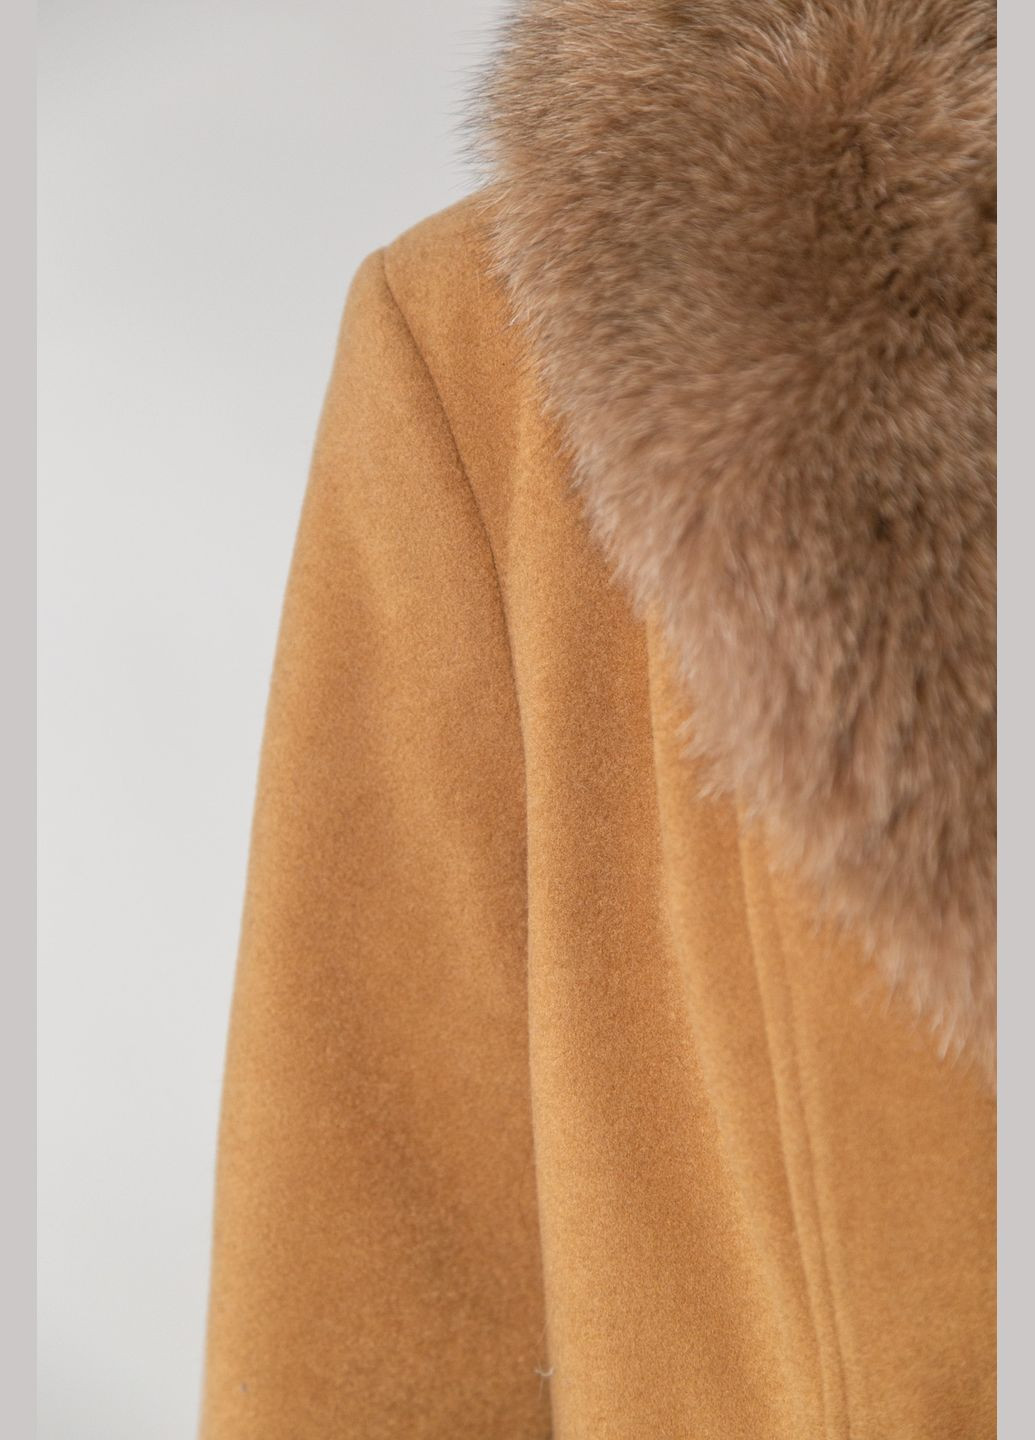 Светло-коричневое зимнее Пальто двубортное Chicly Furs